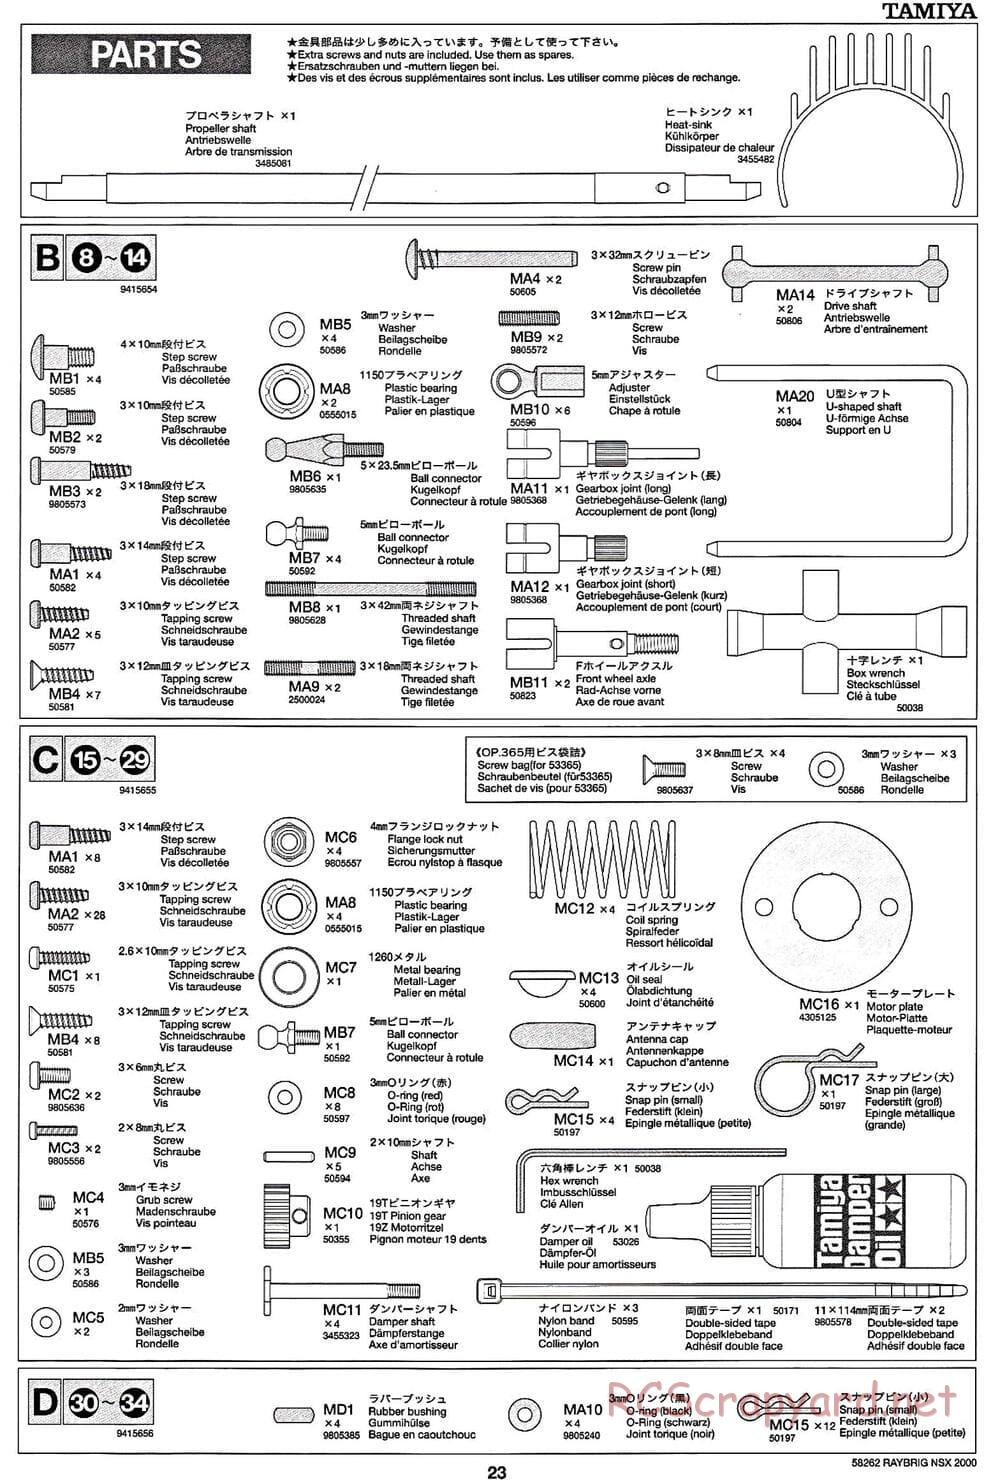 Tamiya - Raybrig NSX 2000 - TB-01 Chassis - Manual - Page 23